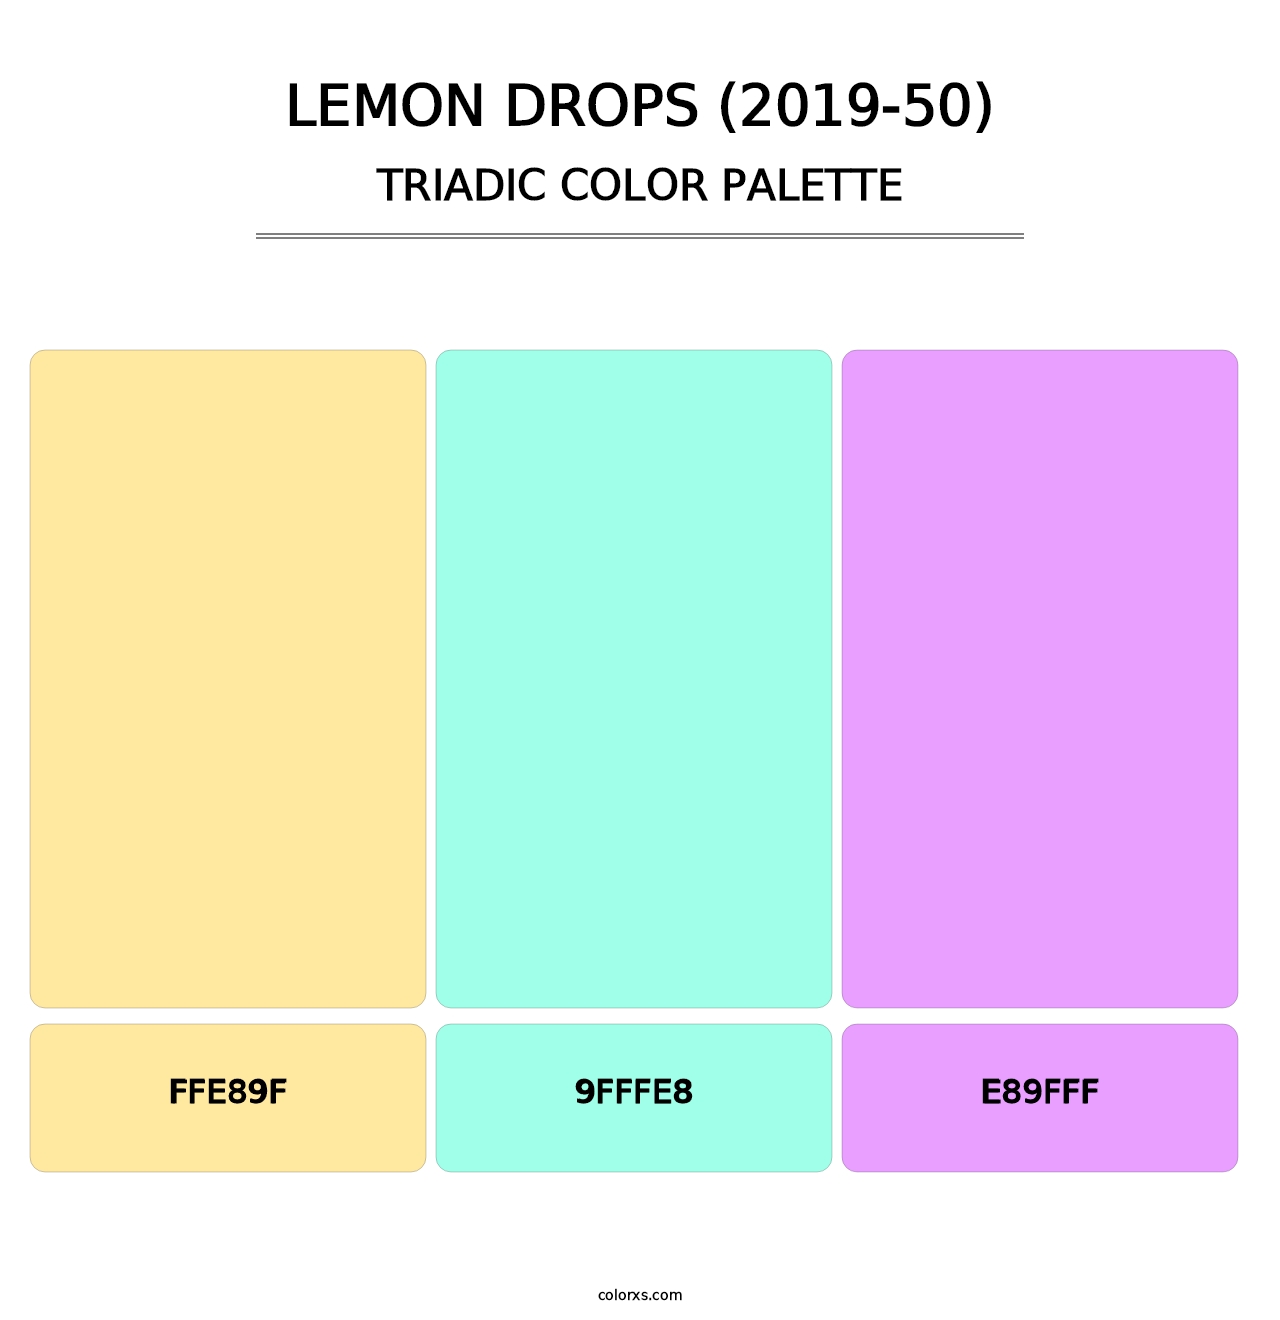 Lemon Drops (2019-50) - Triadic Color Palette